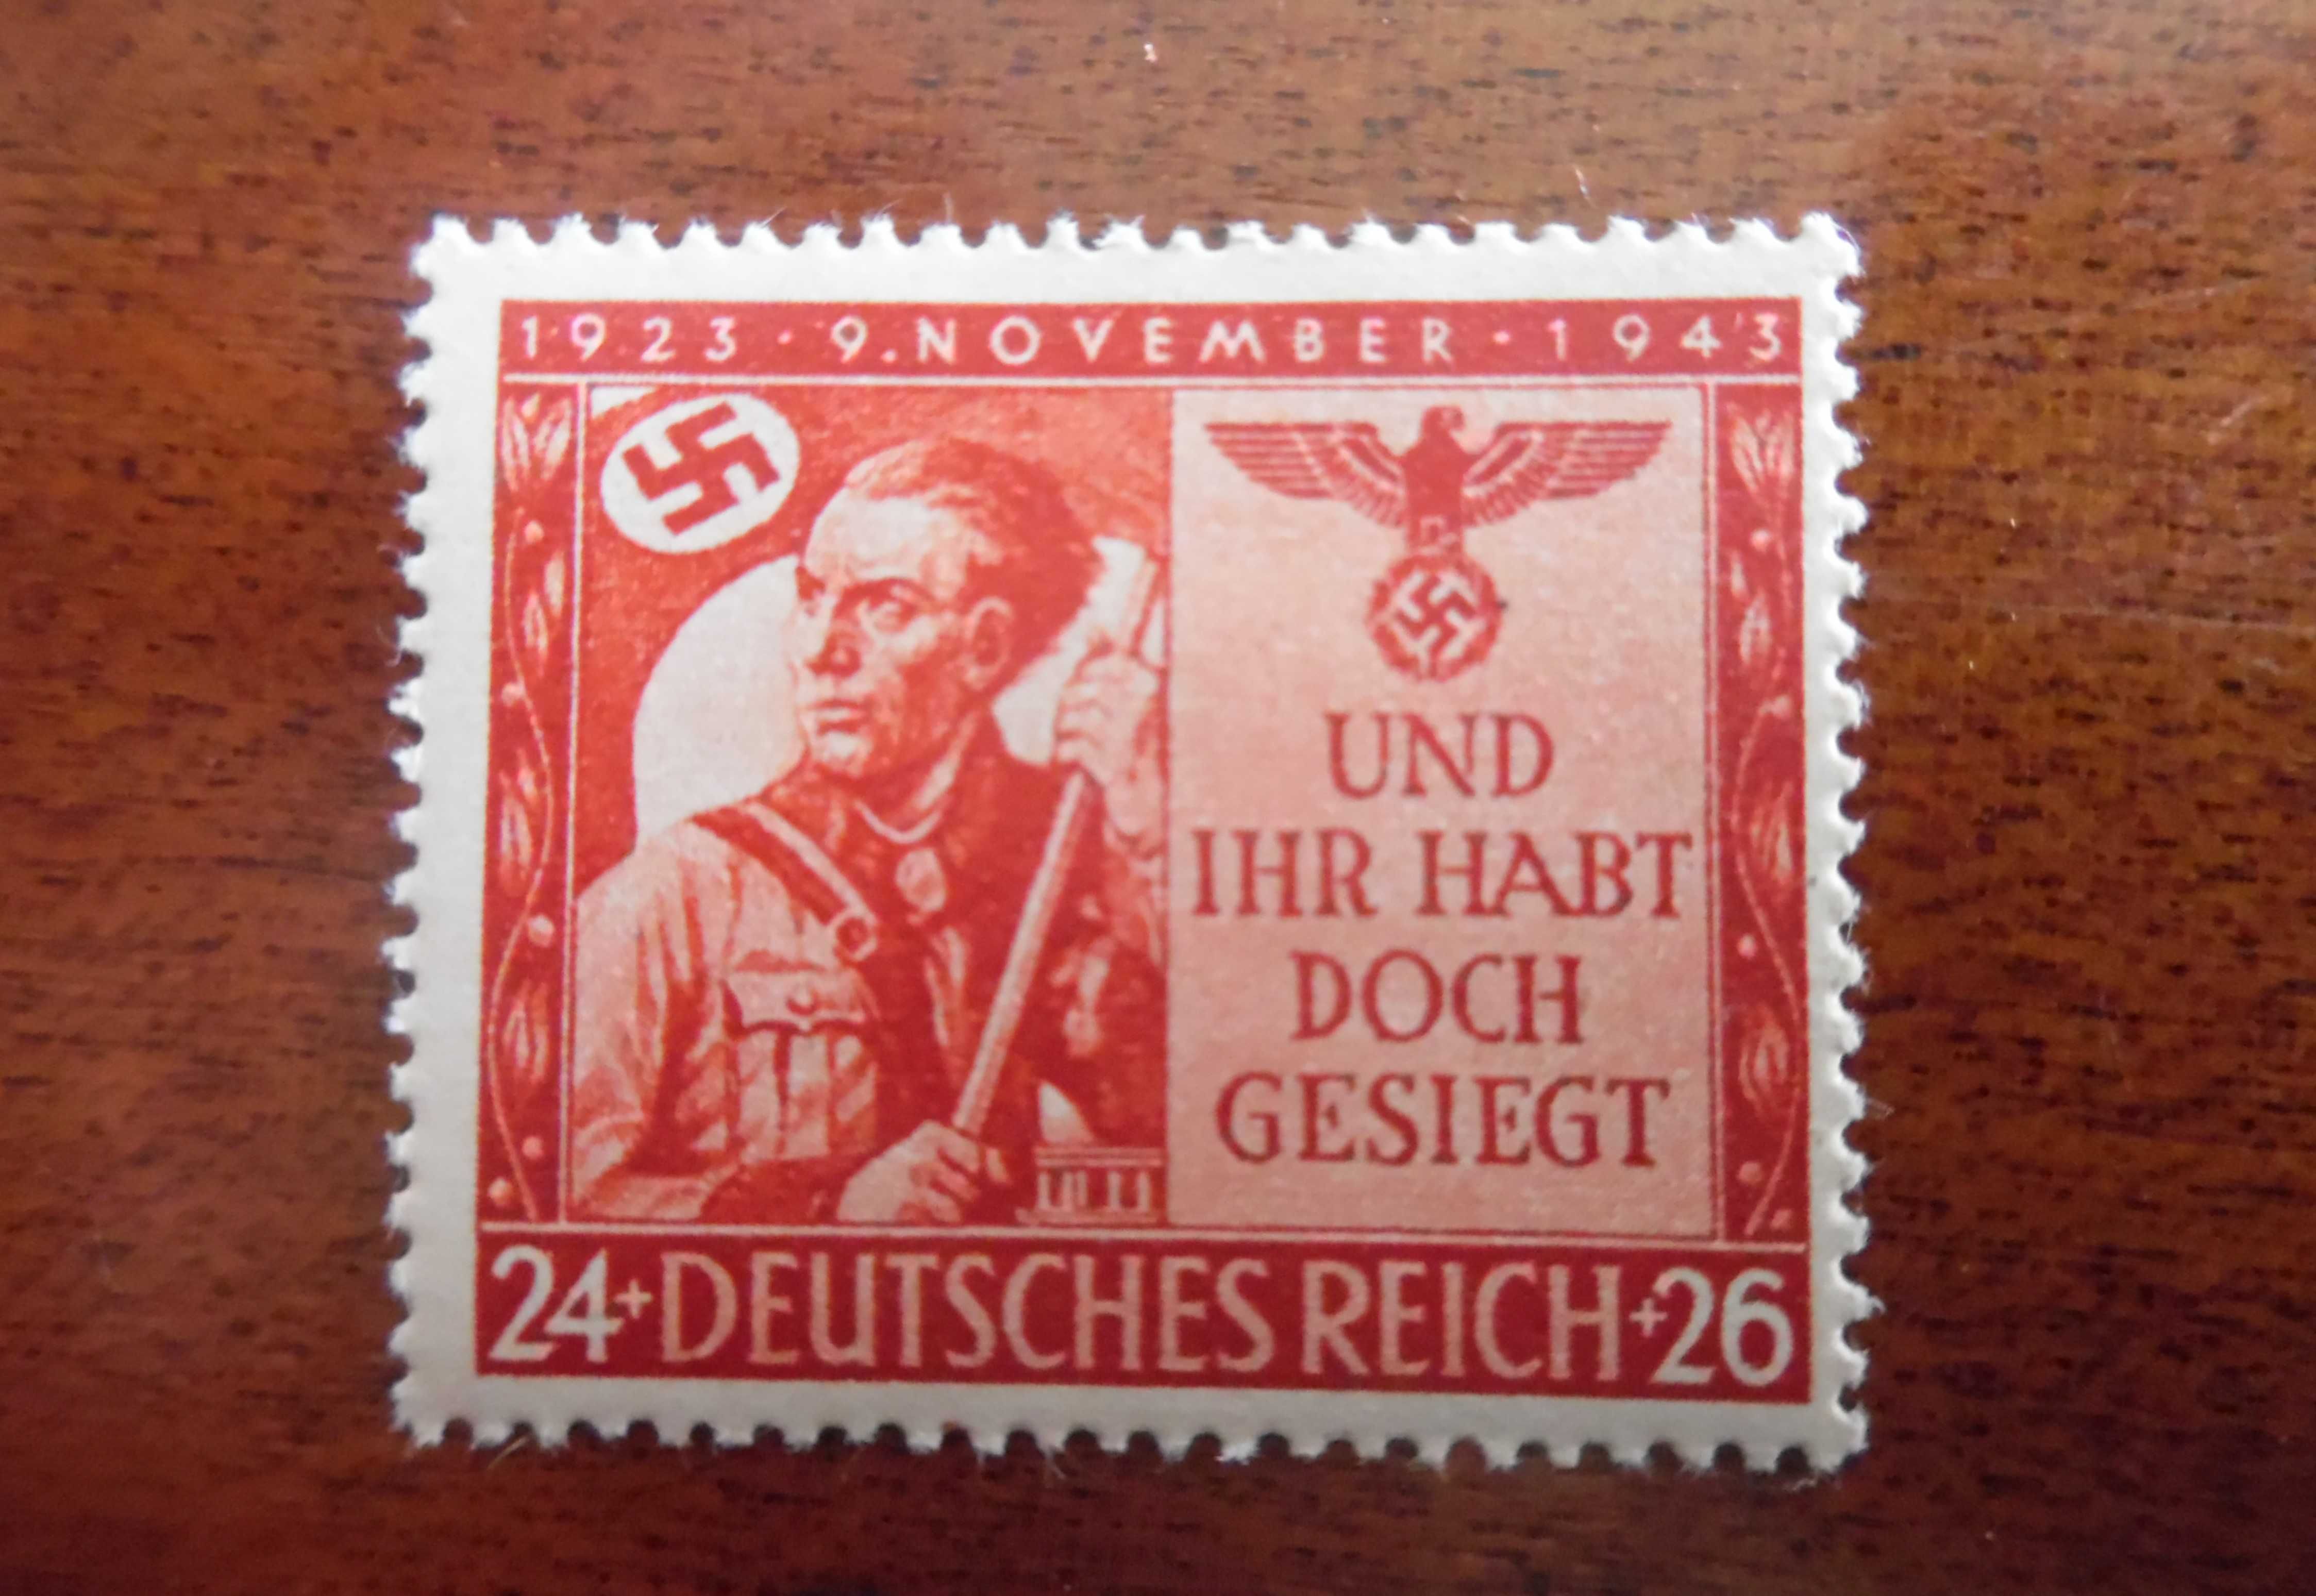 Selos Alemanha Nazi 1933/45-Militar c/Suástica 1943 Novo 2ª Guerra